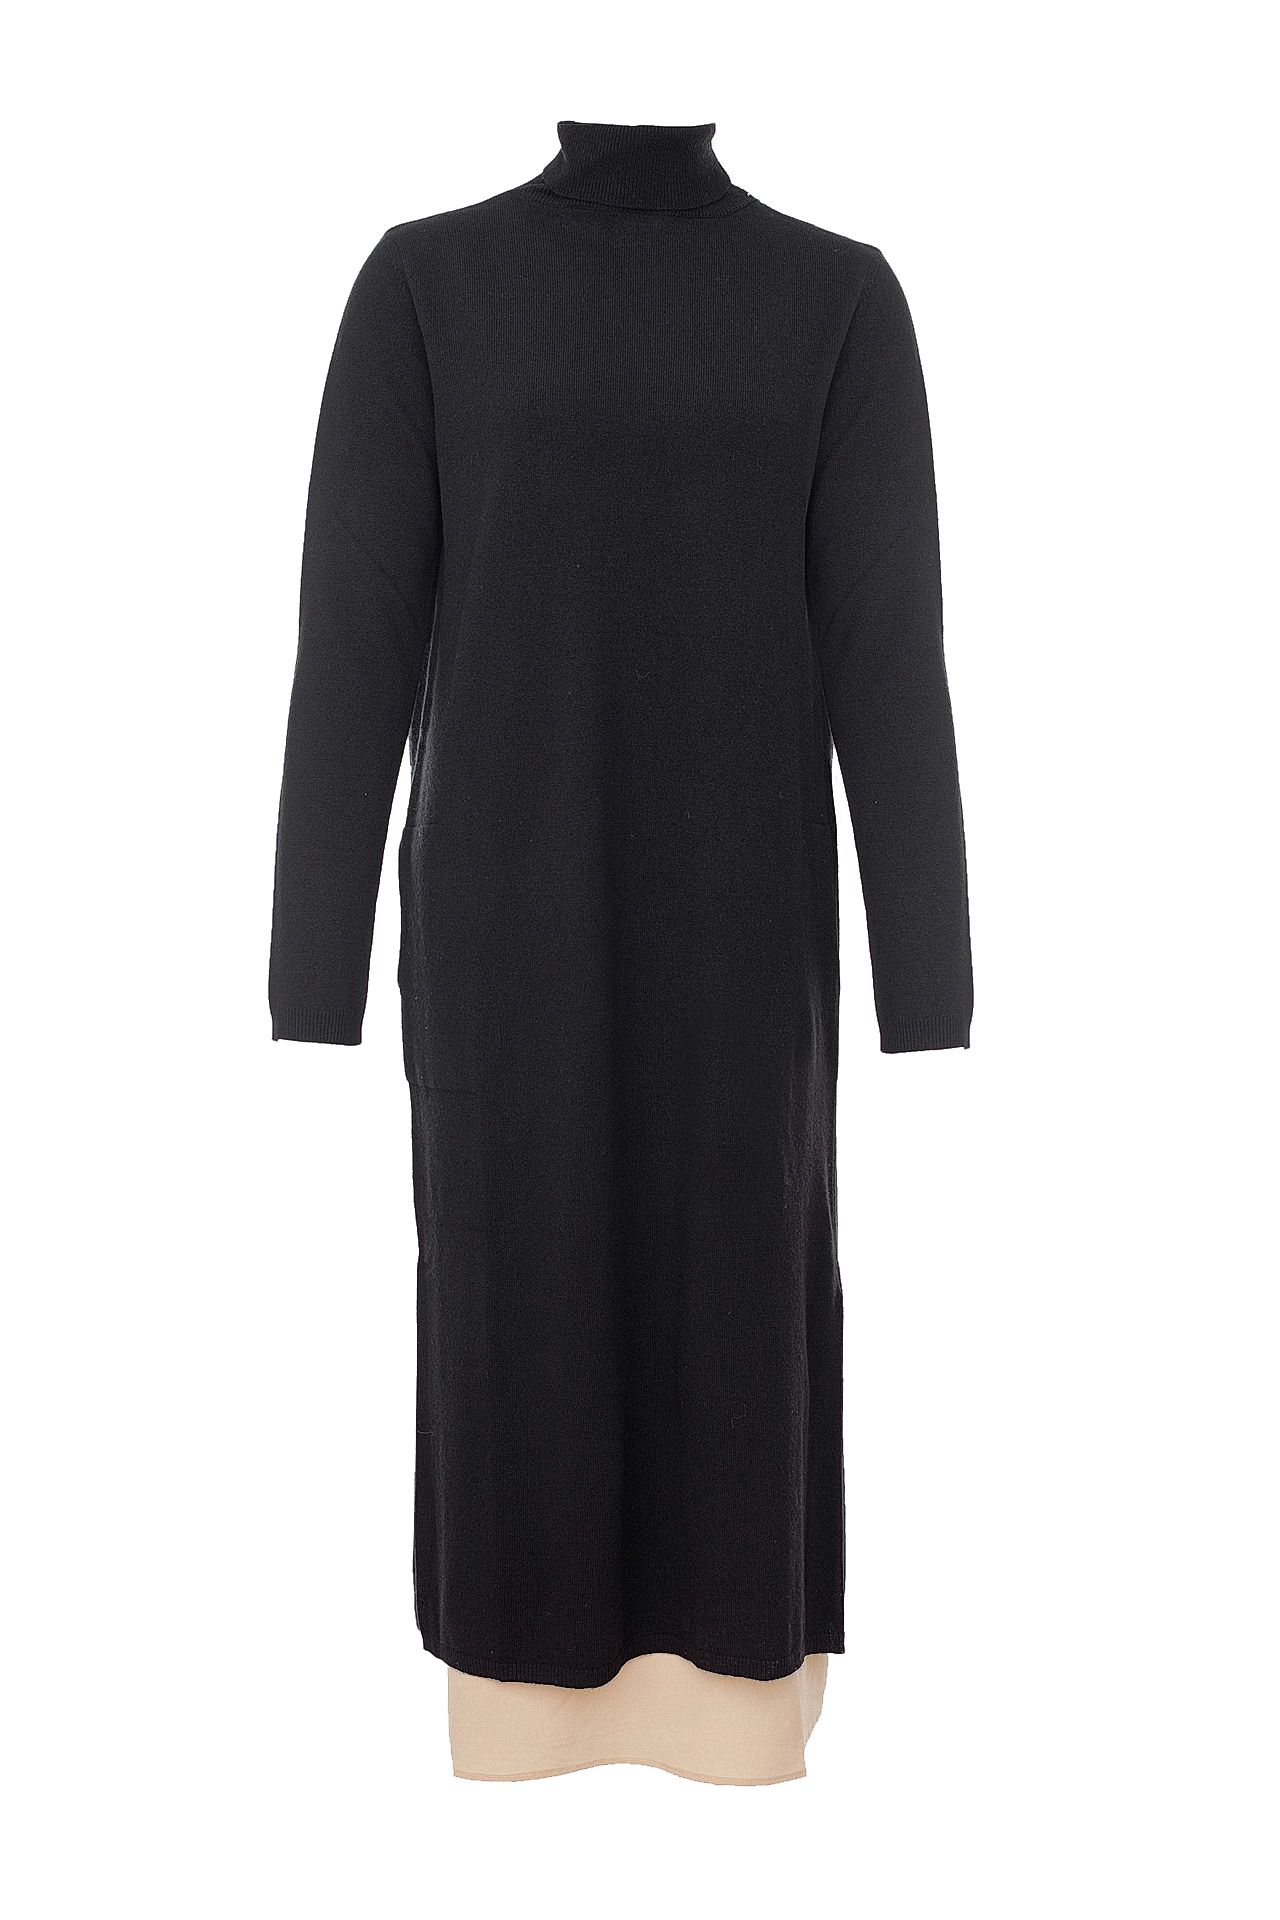 Одежда женская Платье TWIN-SET (TA7361/18.1). Купить за 19900 руб.